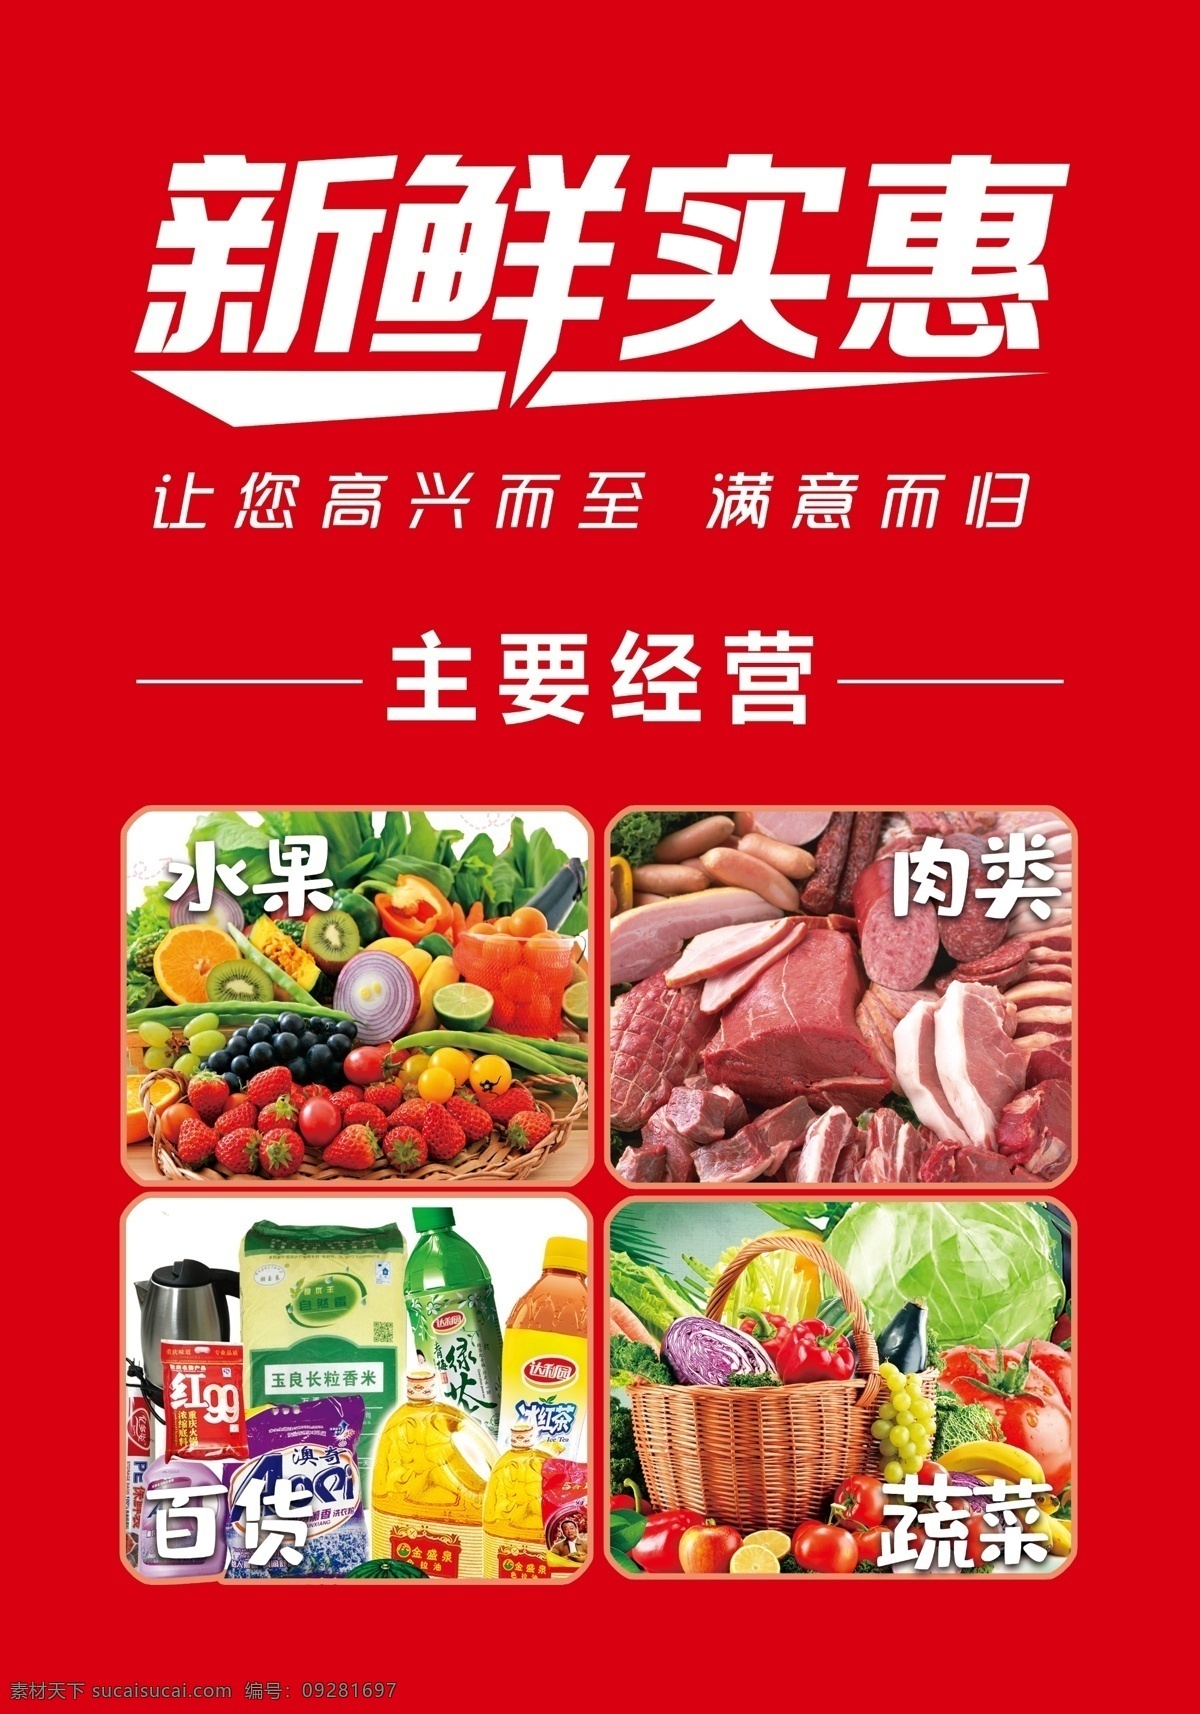 超市海报图片 超市海报 新鲜实惠 水果蔬菜 蔬菜 肉类 百货 超市开业海报 分层